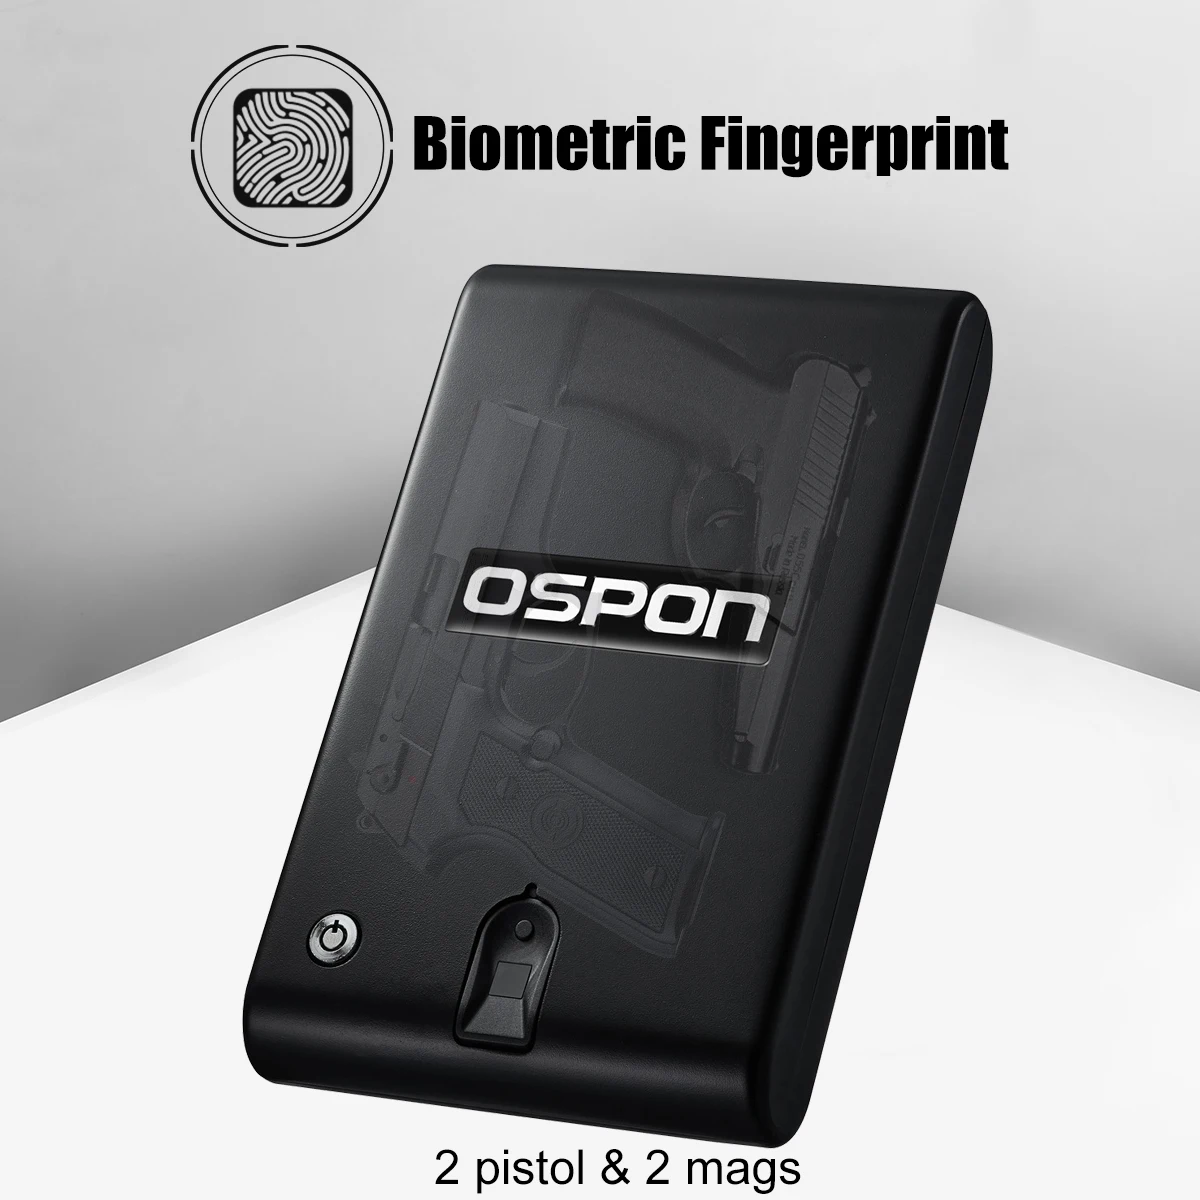 

Биометрический электронный пистолет для безопасности со сканером отпечатков пальцев, мини-пистолет, сейф, ваза, ящик для оружия, оружие, боеприпасы, наличные деньги, автомобиль Ospon